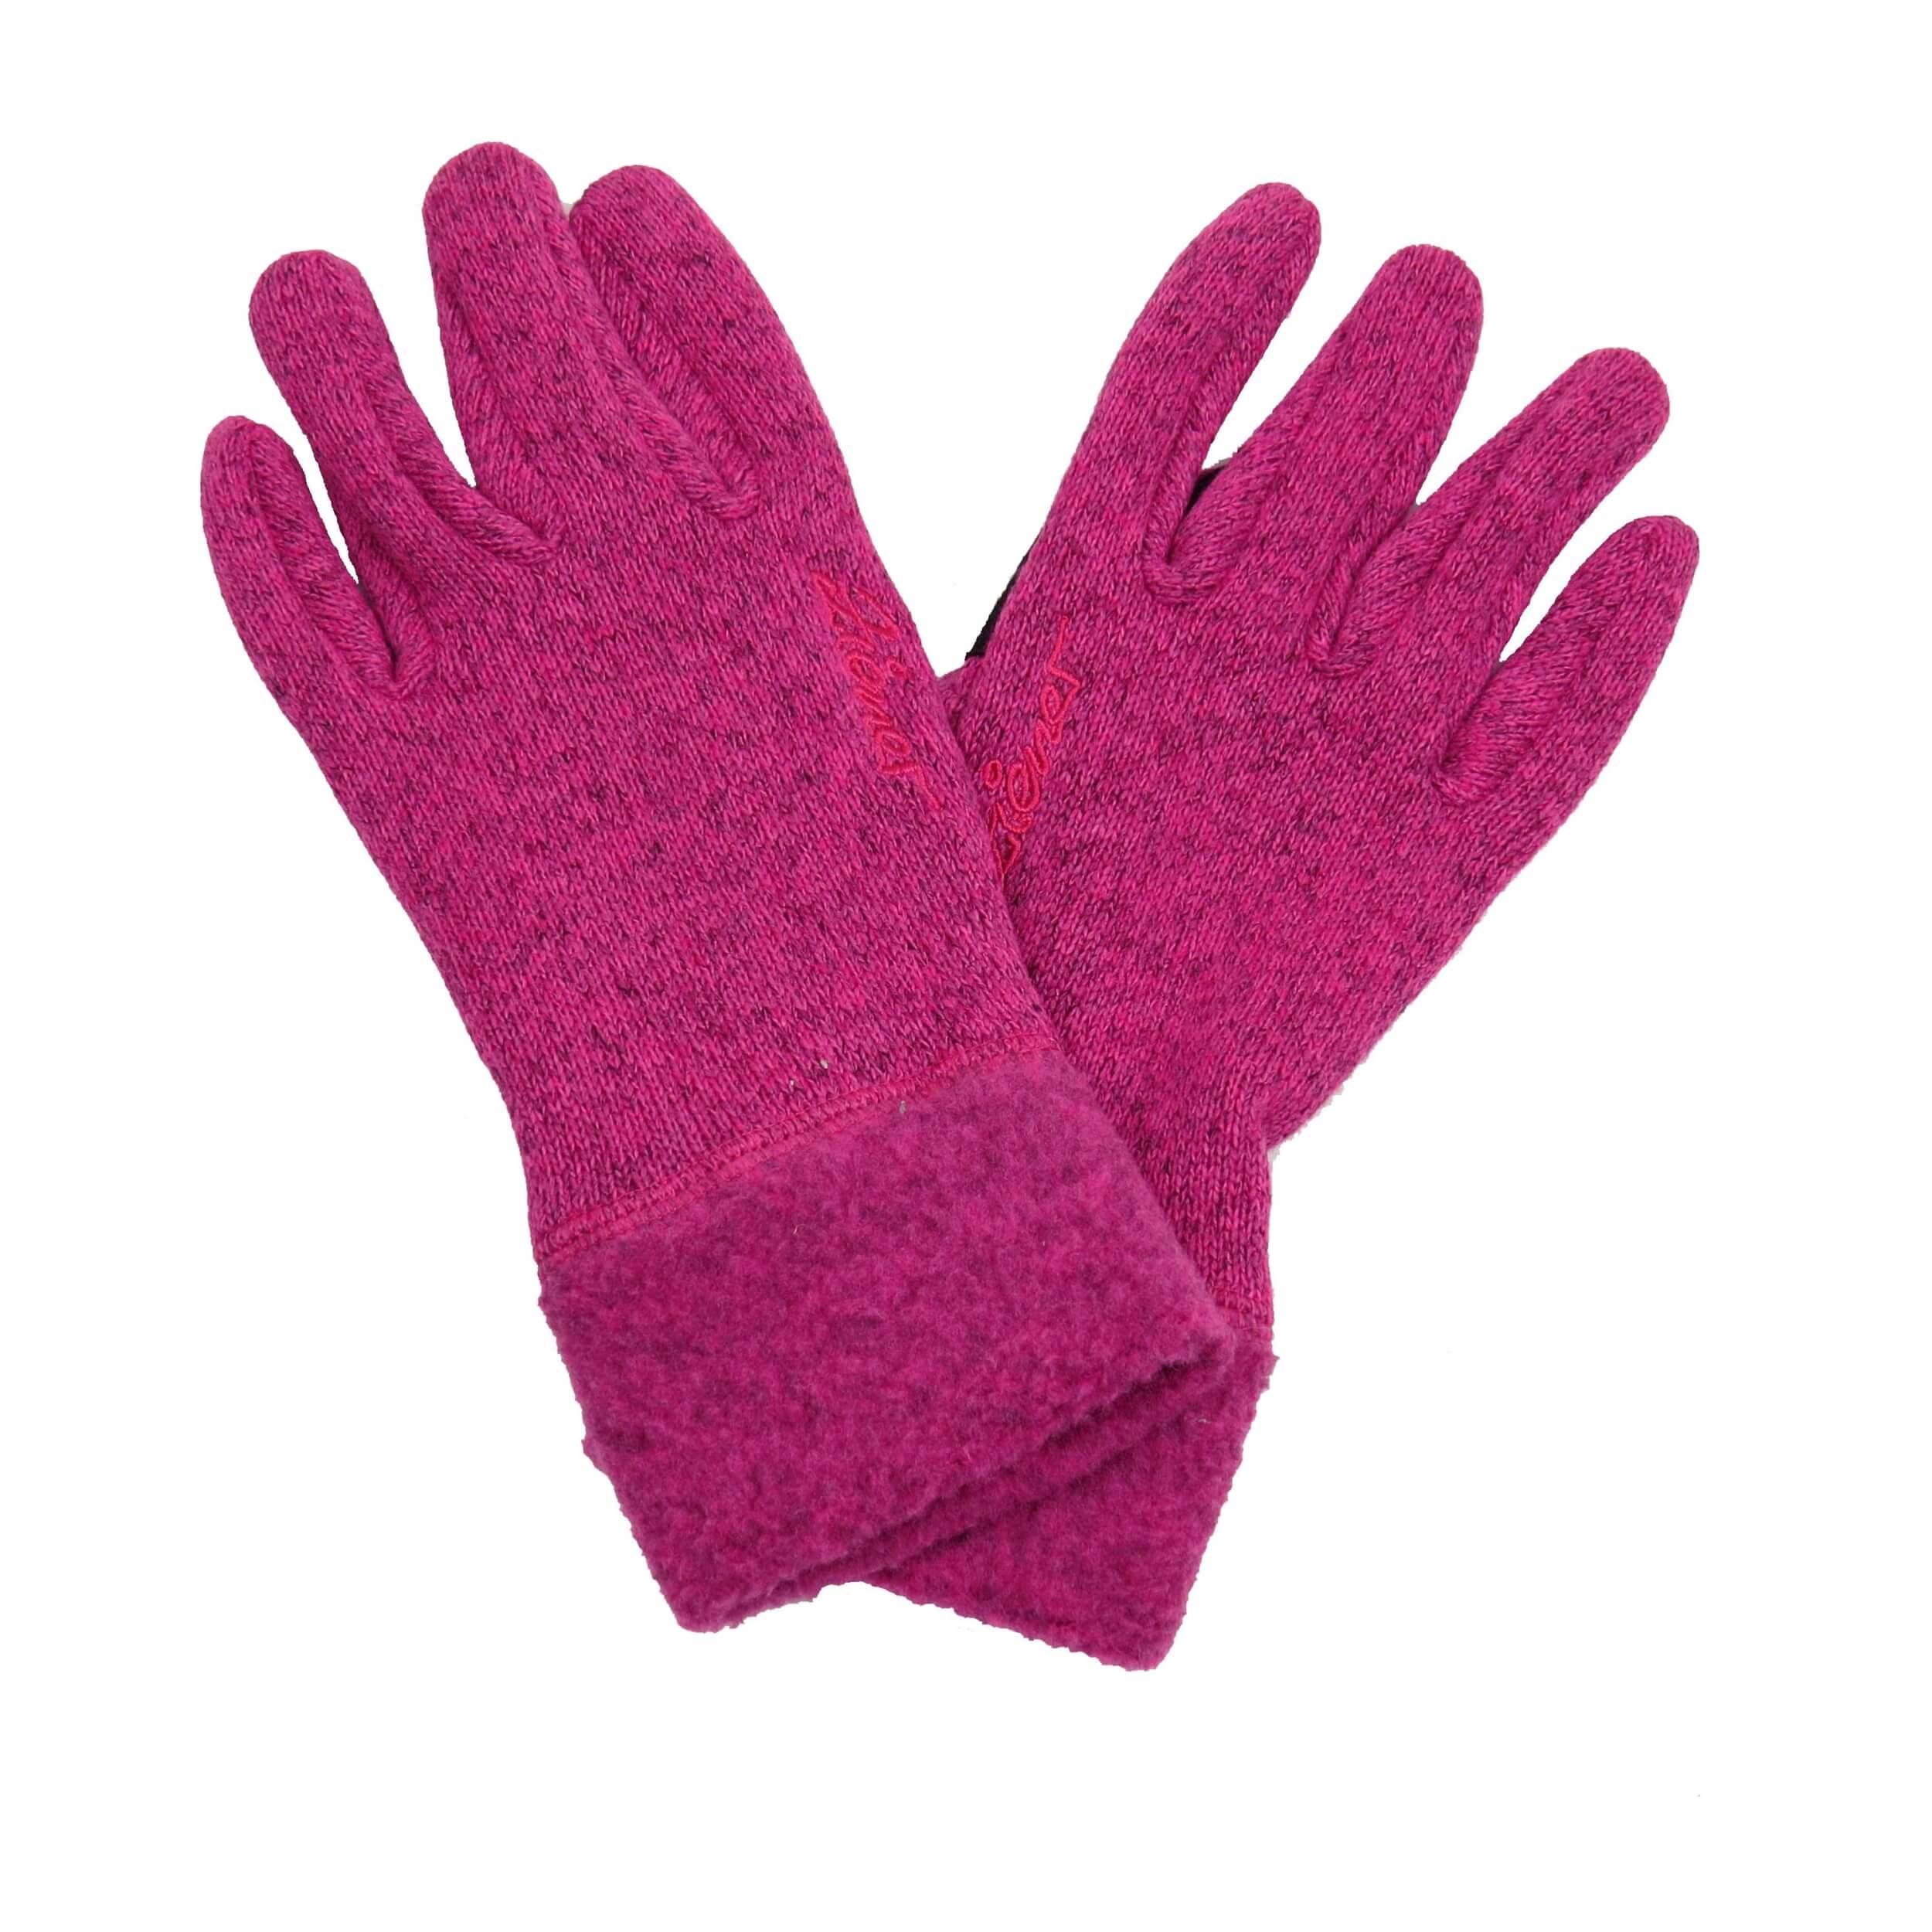 ZIENER Winter Handschuhe Ilmari pink 768